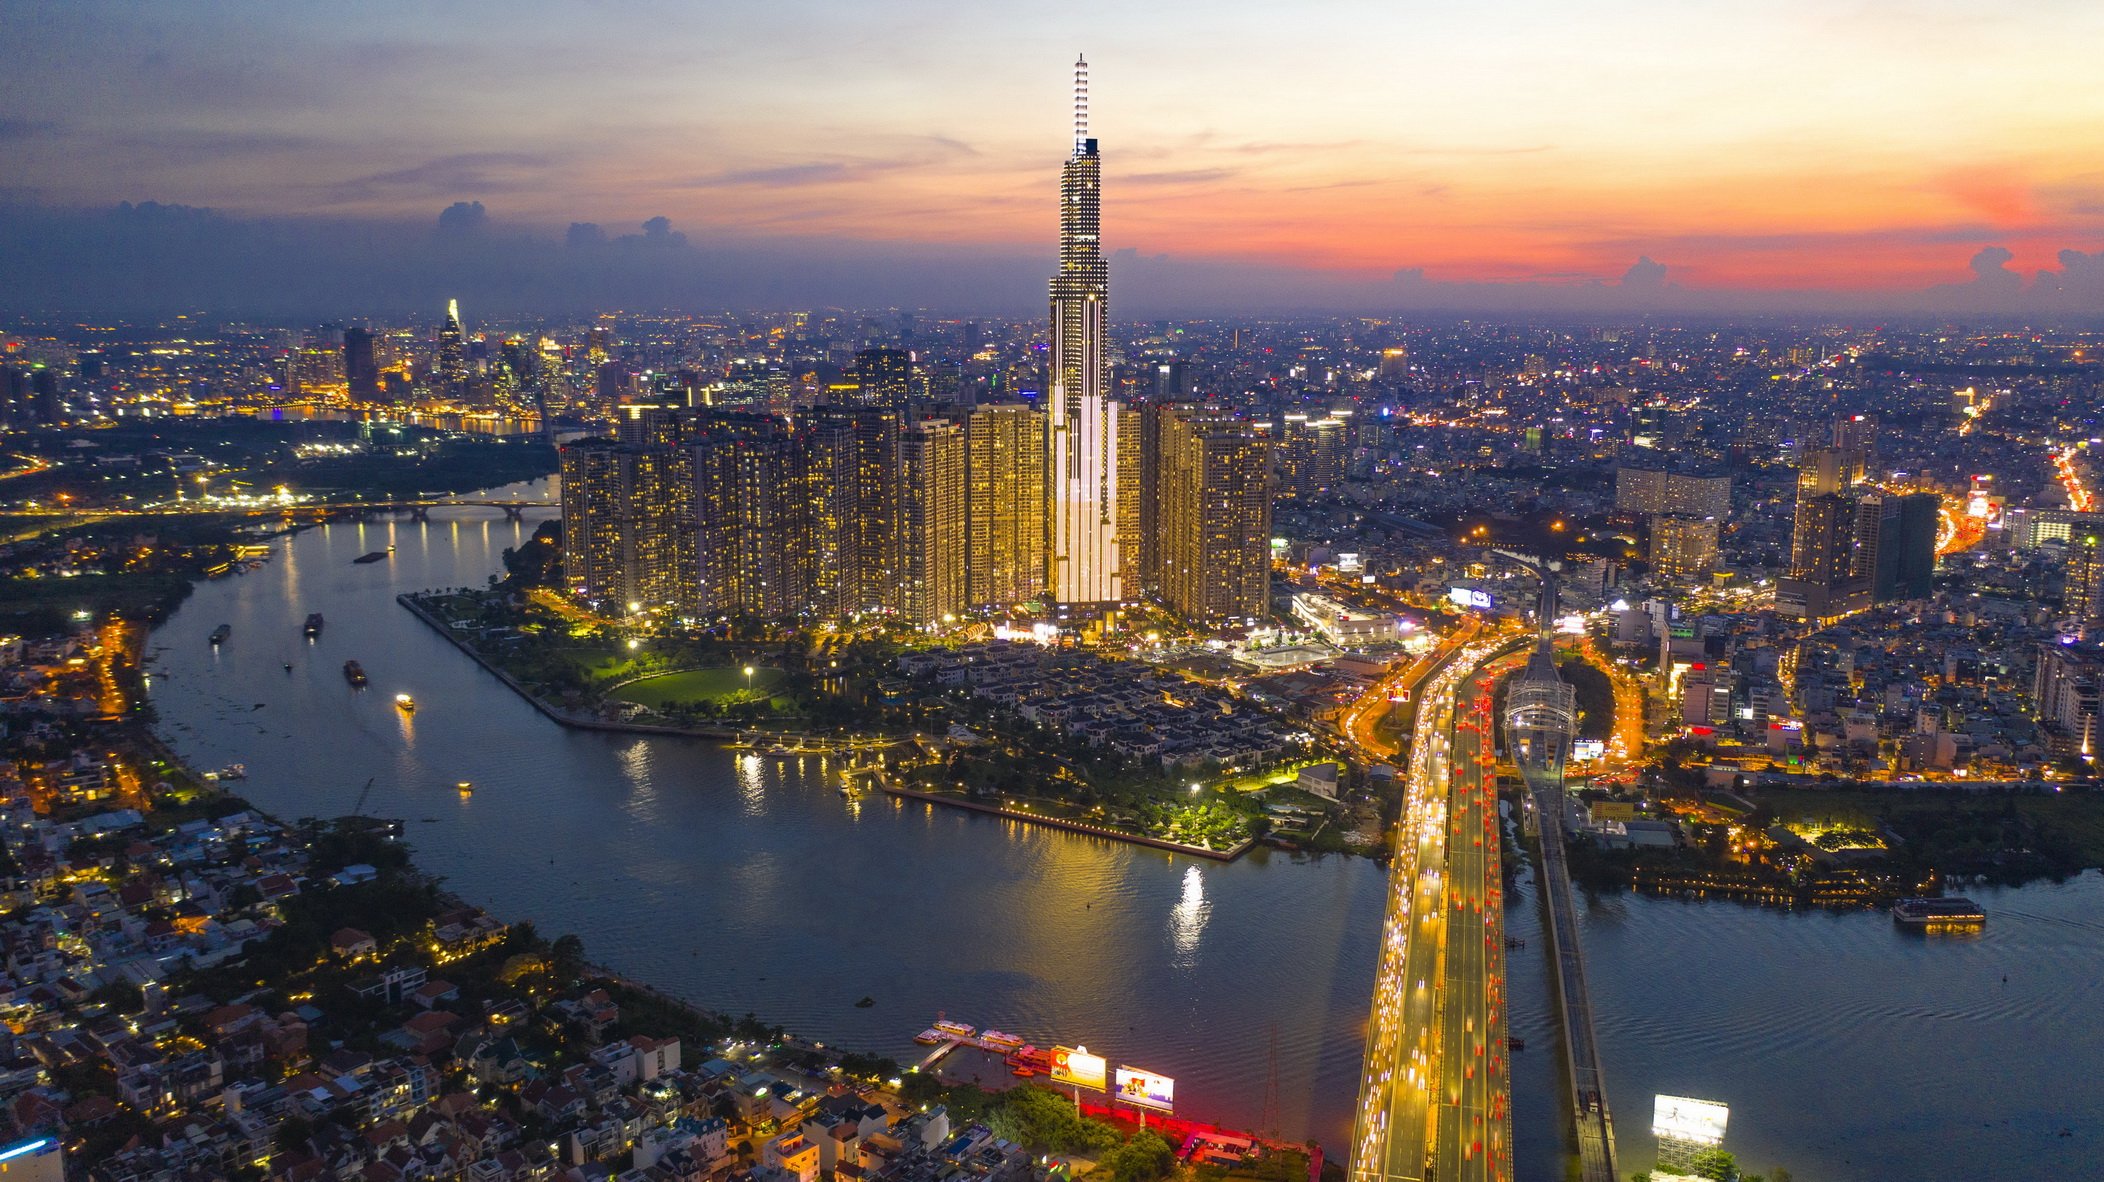 Tuoi Tre launches ‘Saigon River Development Plan’ contest